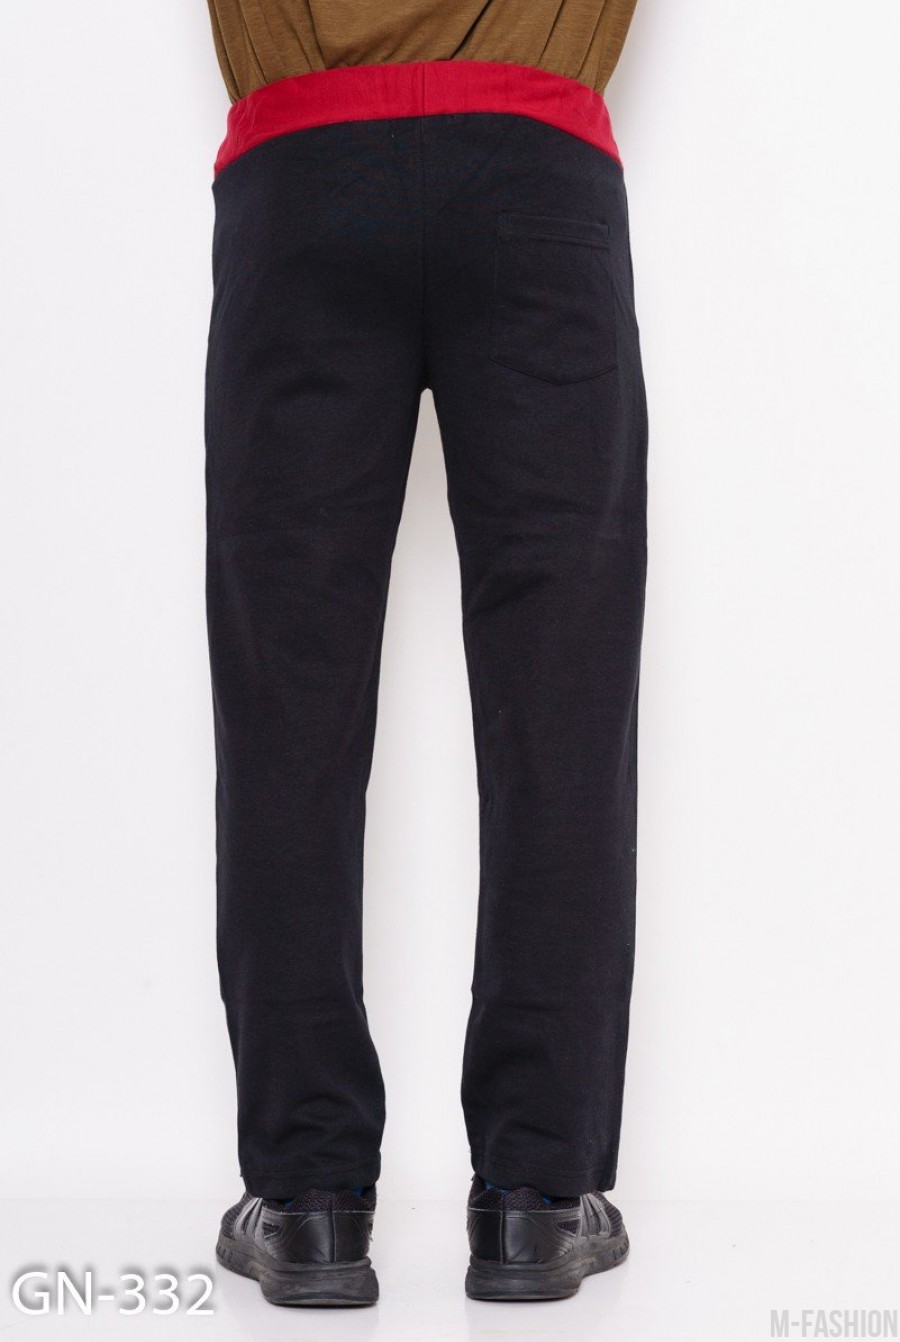 Черно-бордовые трикотажные спортивные штаны с аппликацией- Фото 4